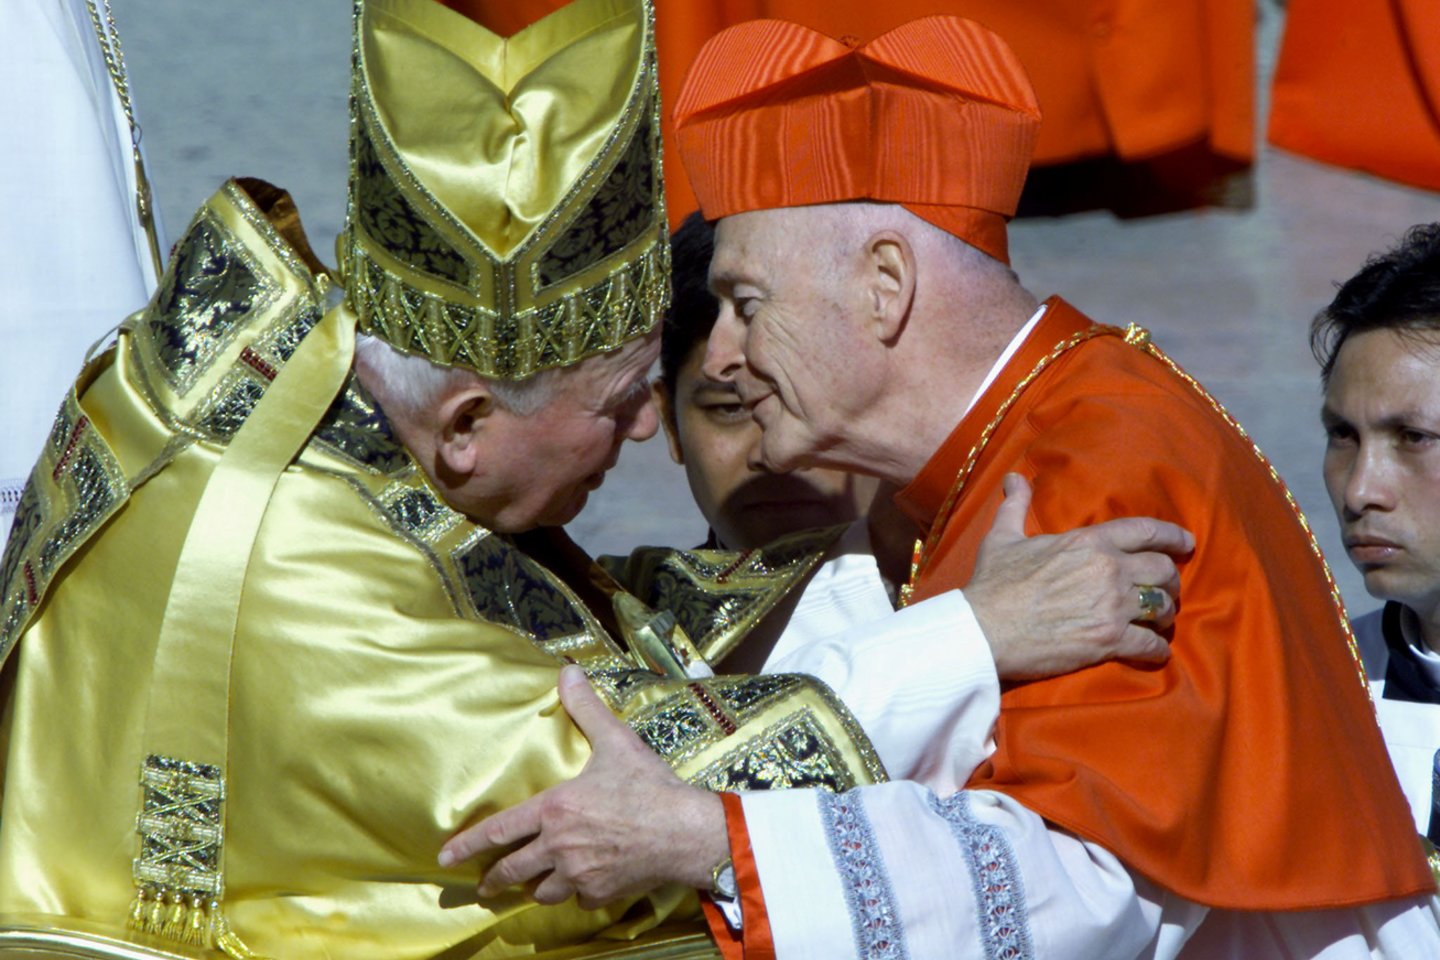 Popiežius Jonas Paulius II ir nušalintasis kardinolas Theodore'as McCarrickas.<br>REUTERS/Scanpix nuotr.